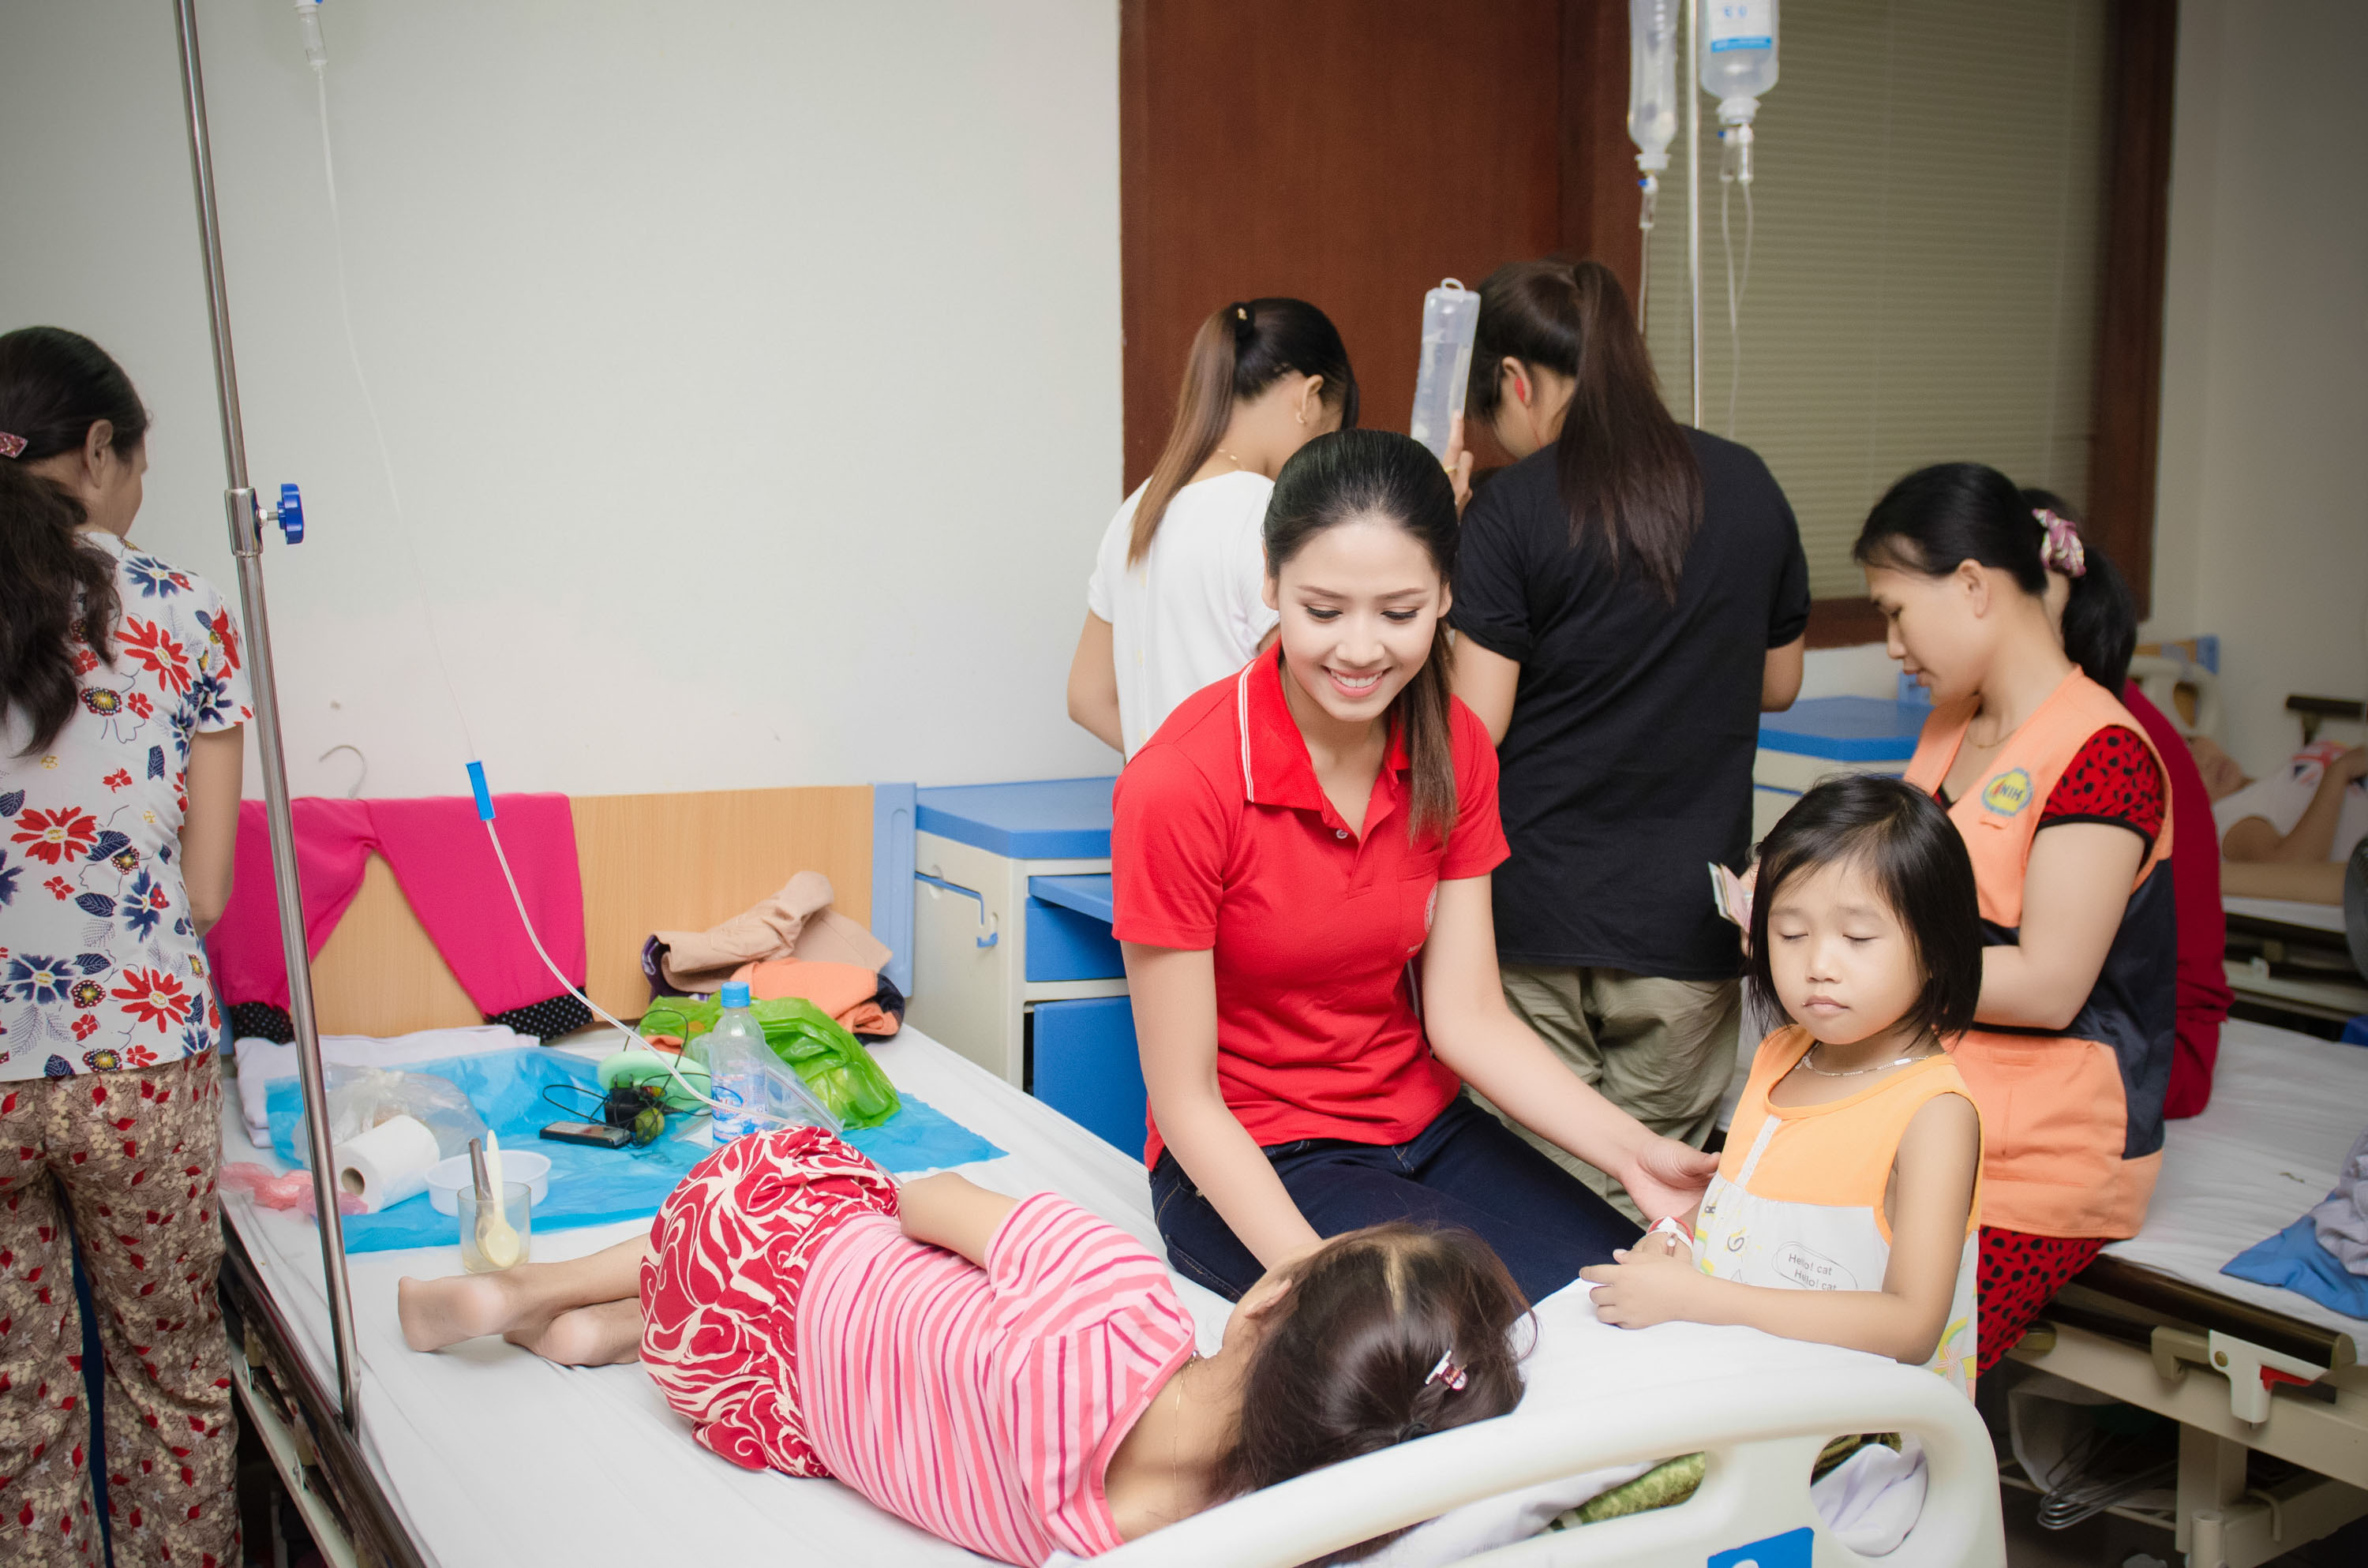  Nguyễn Thị Loan tham gia đi thăm hỏi các bệnh nhân tại phòng của các bệnh nhân Tan máu bẩm sinh ngay tại bệnh viện của Viện huyết học với rất nhiều các trường hợp hoàn cảnh đặc biệt.